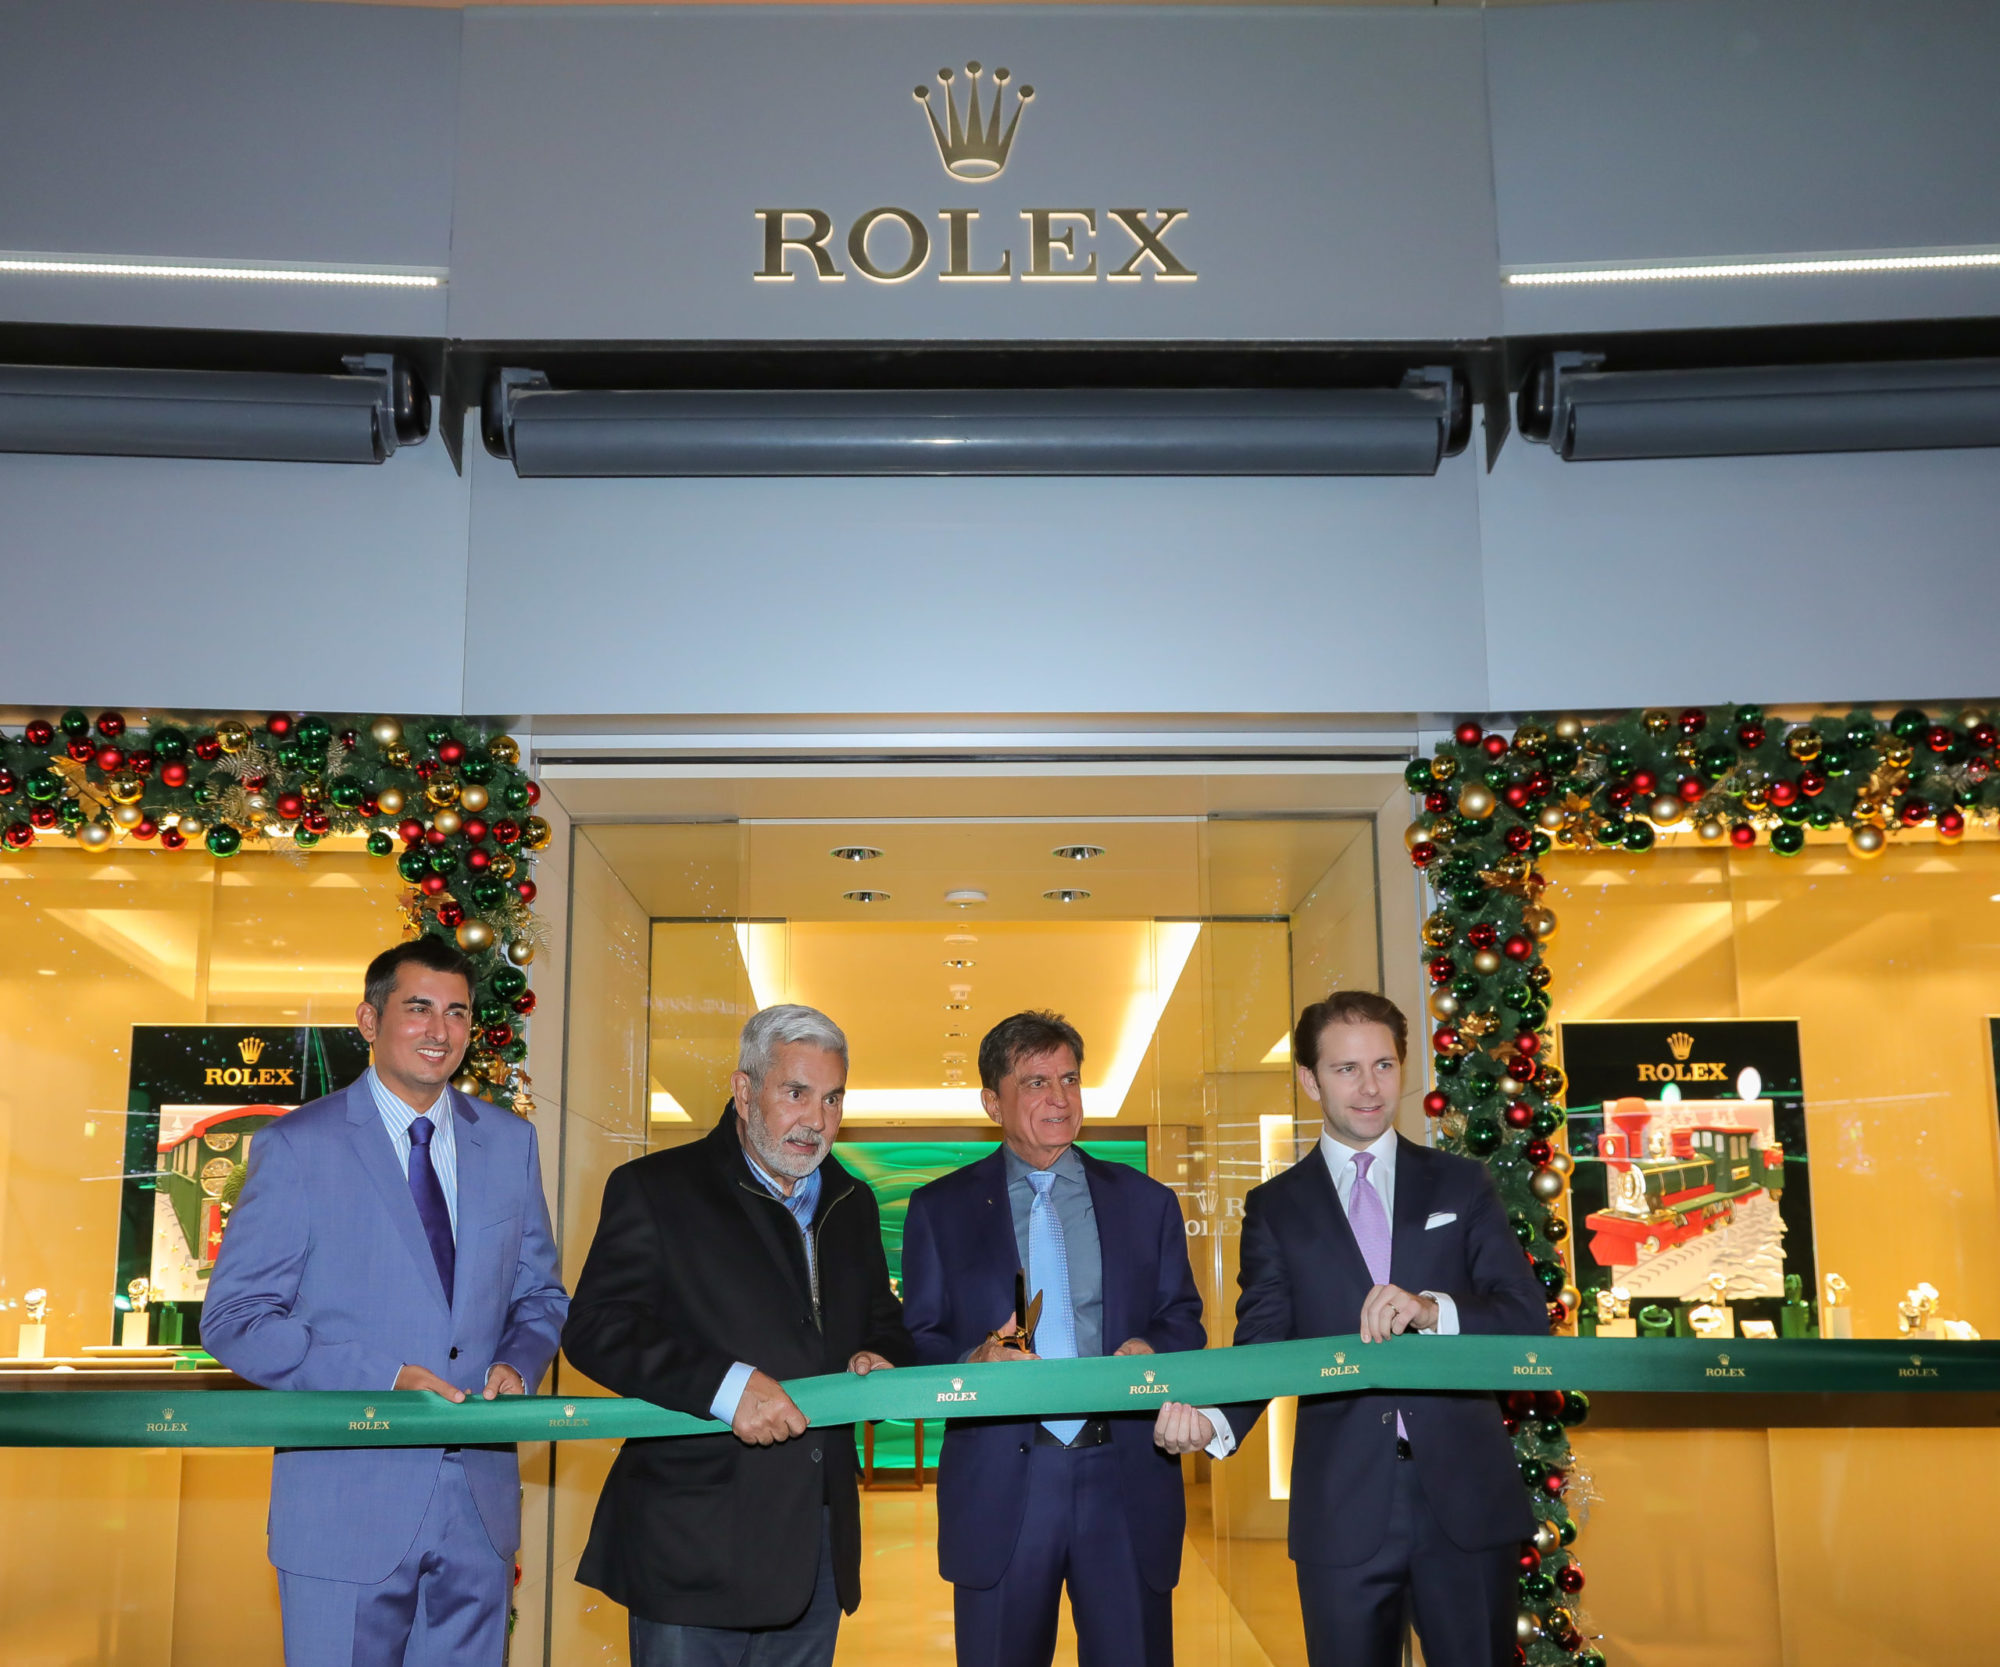 Rolex aterriza en Canarias de la mano de Ideal Joyeros, en su única Boutique Rolex en el archipiélago.